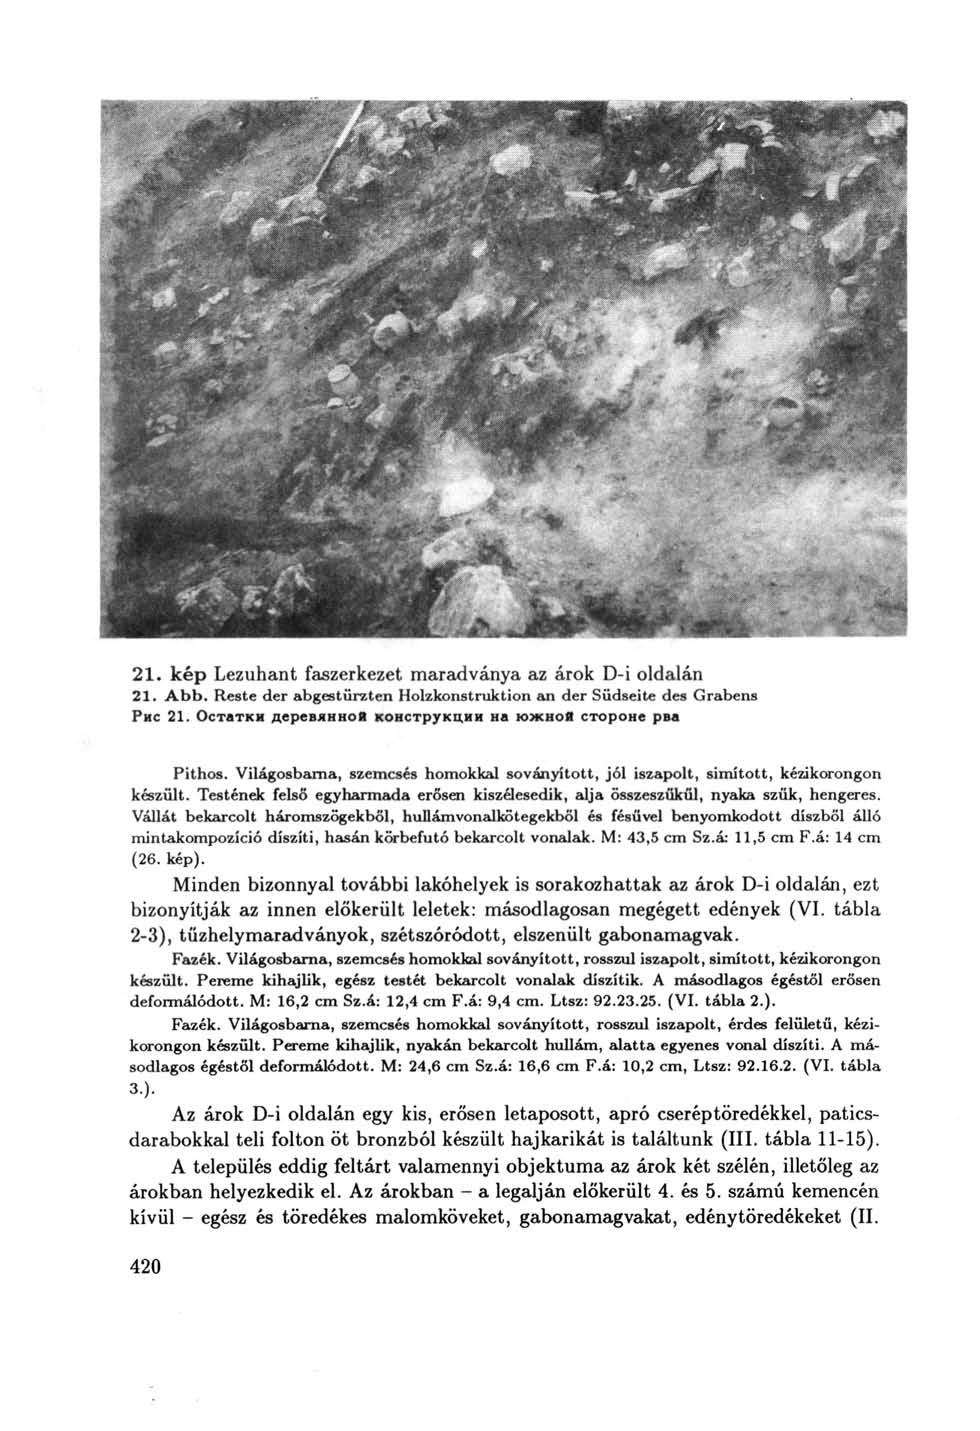 21. kép Lezuhant faszerkezet maradványa az árok D-i oldalán 21. Abb. Reste der abgestürzten Holzkonstruktion an der Südseite des Grabens Рис 21.